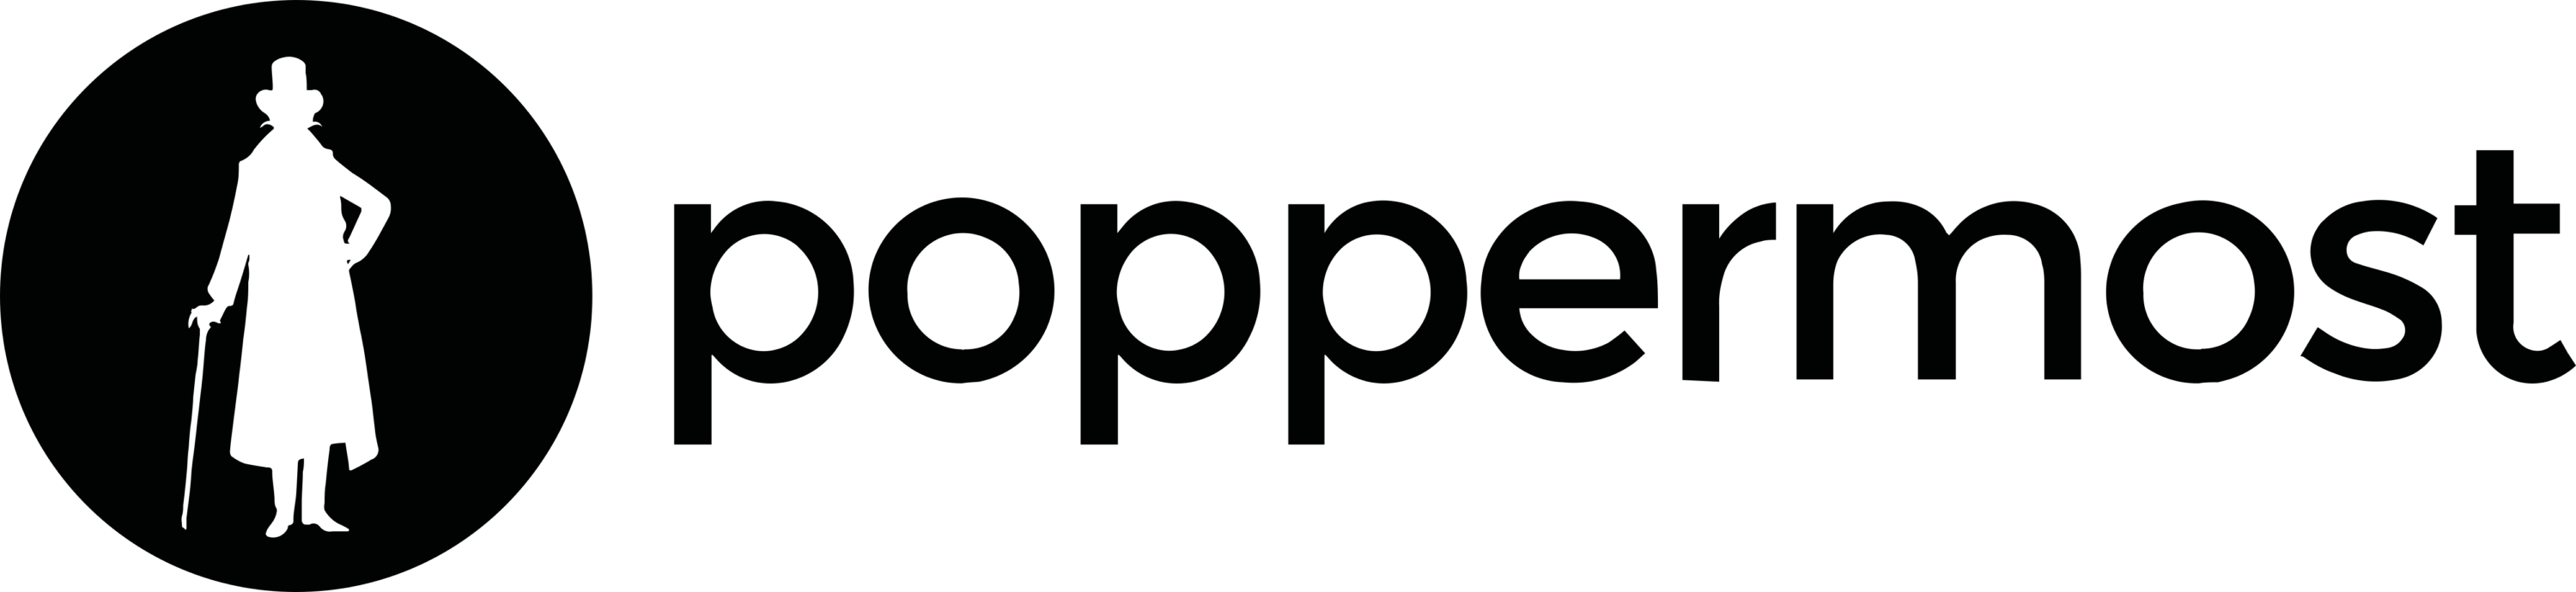 Poppermost Logo